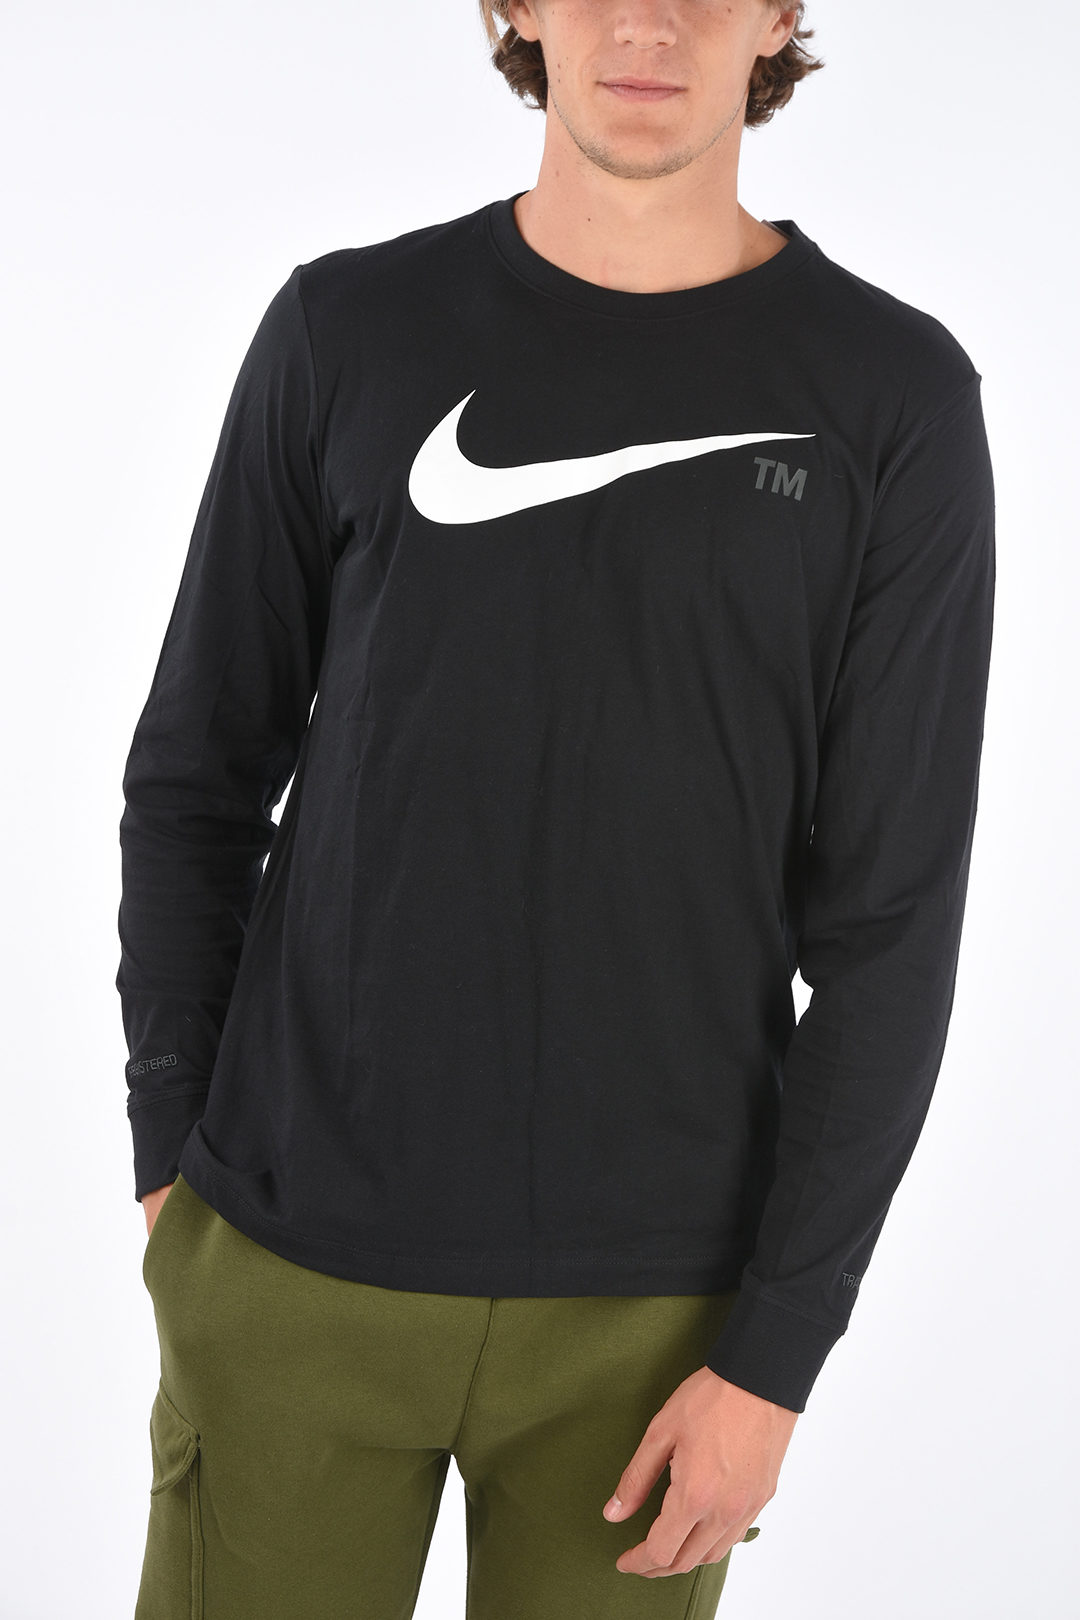 Nike T-shirt - Glamood Outlet